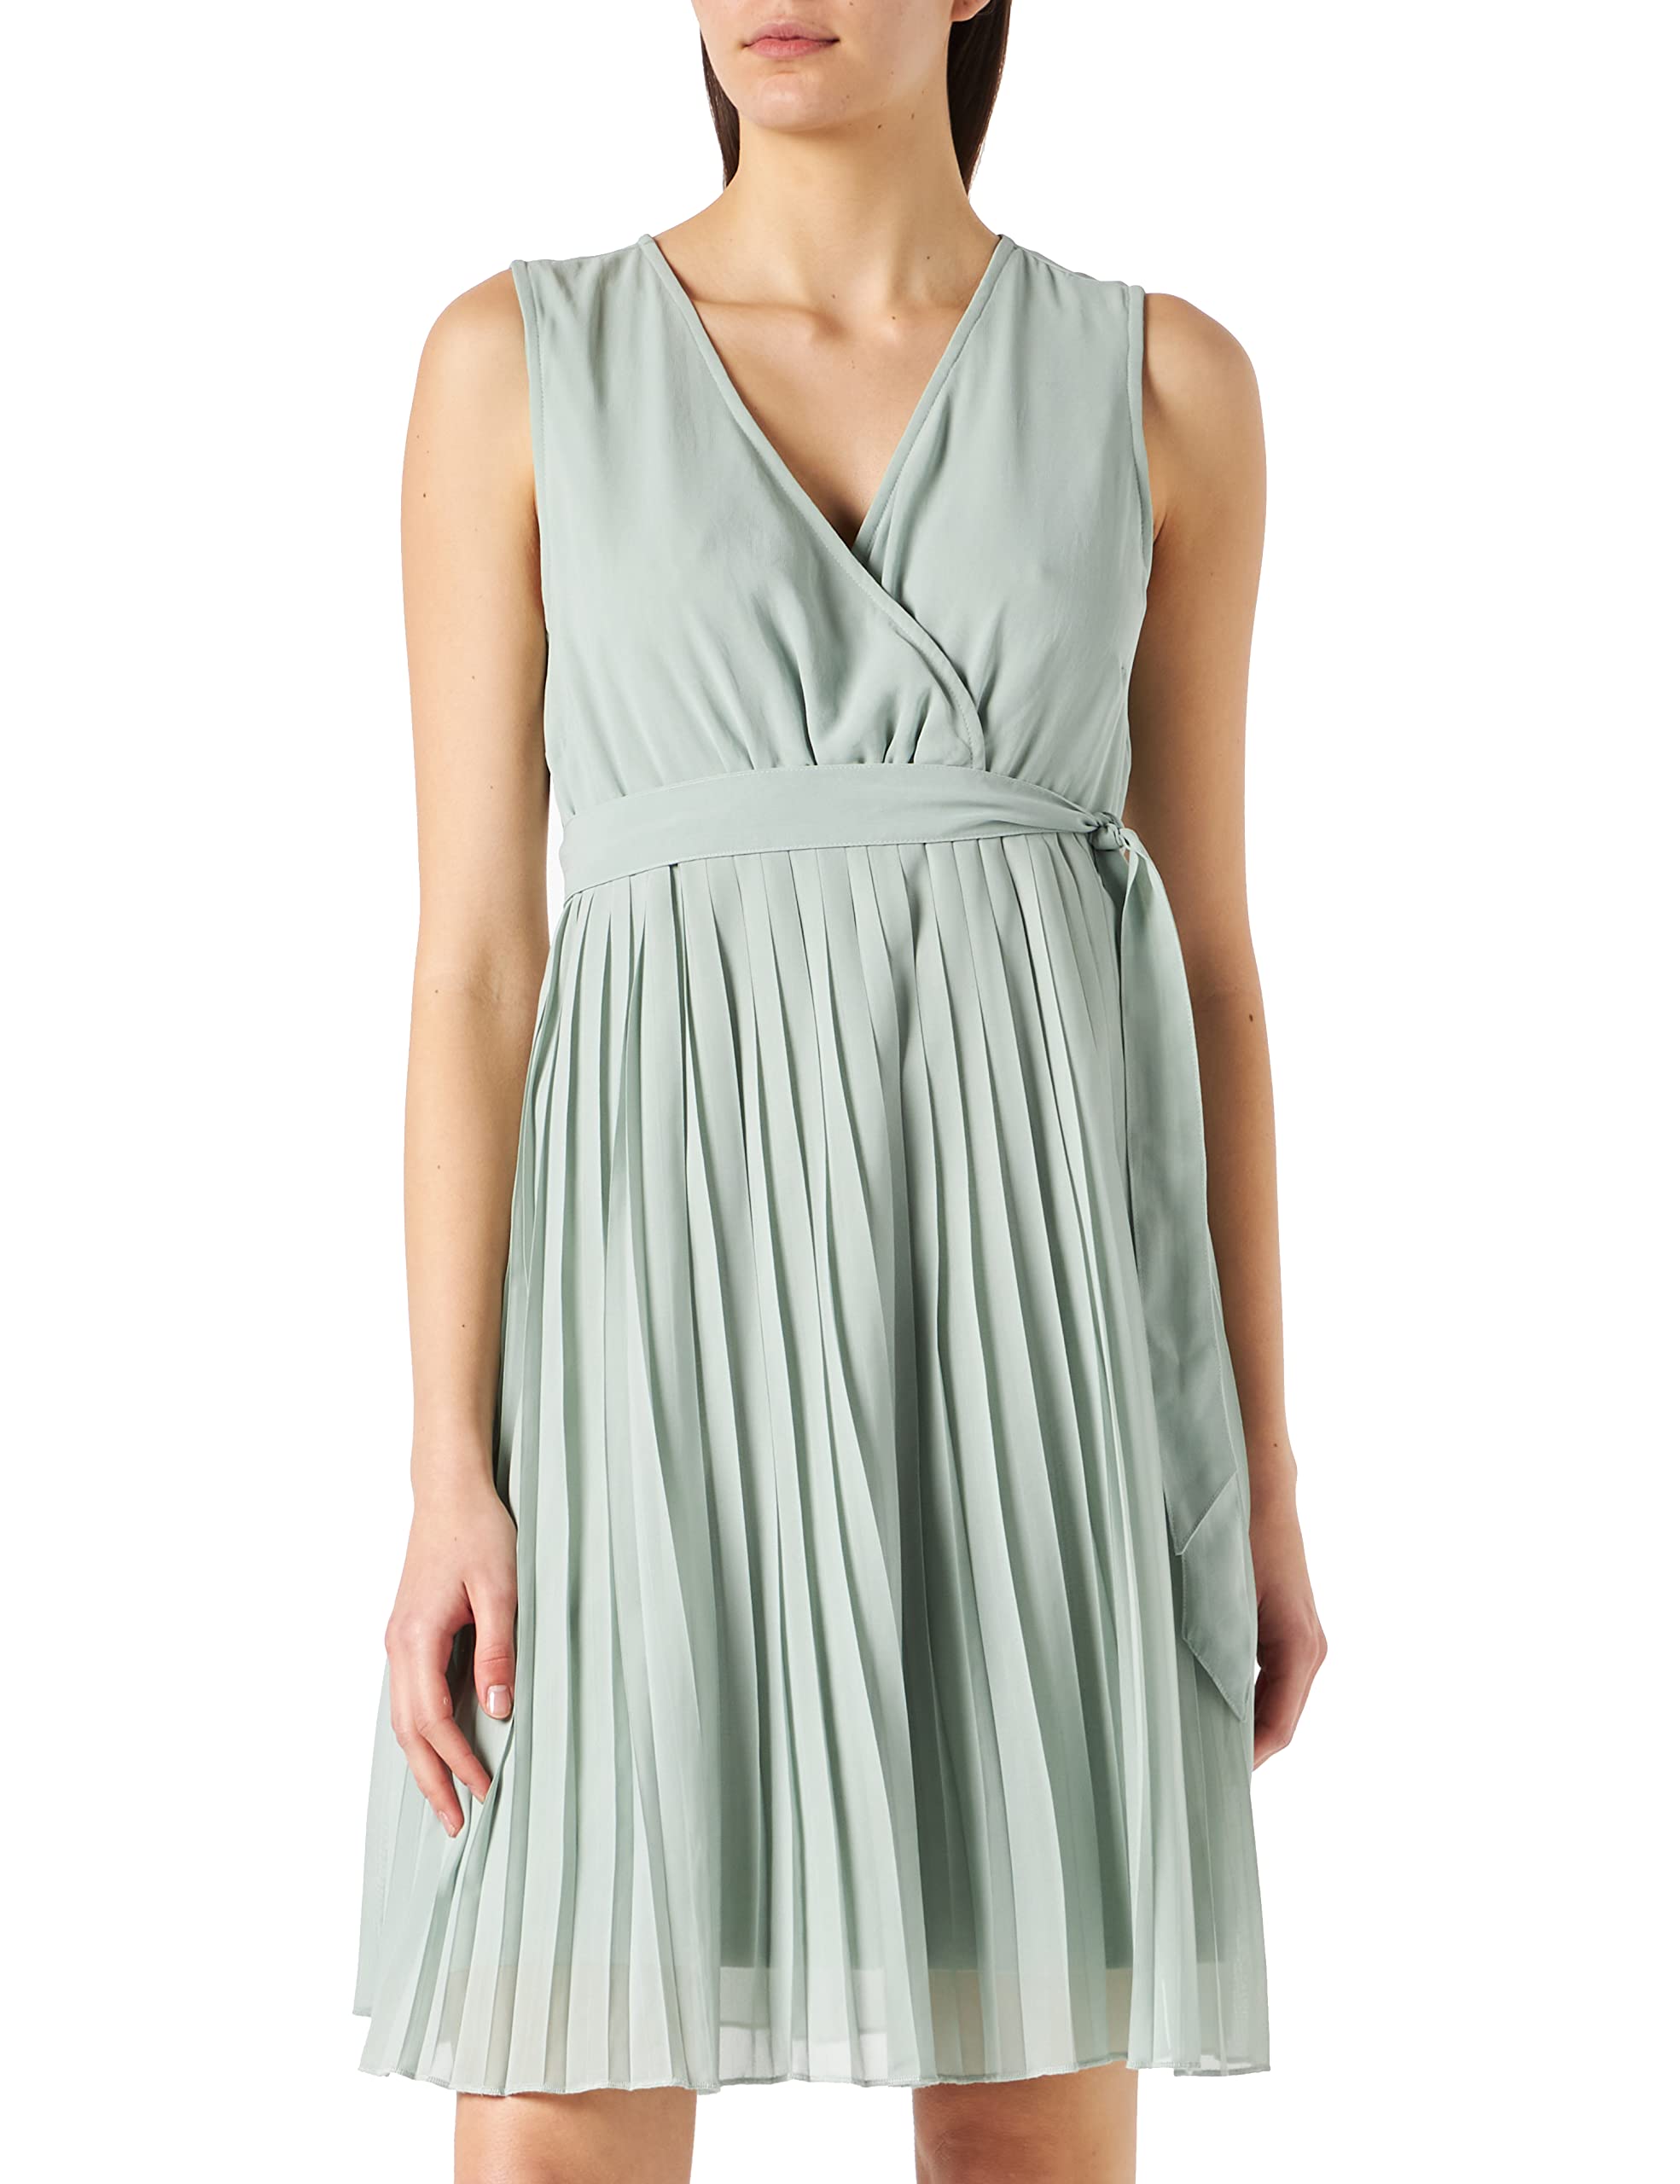 ESPRIT Maternity Damen Dress Woven Sleeveless Kleid, Cement Grey - 54, 36 EU